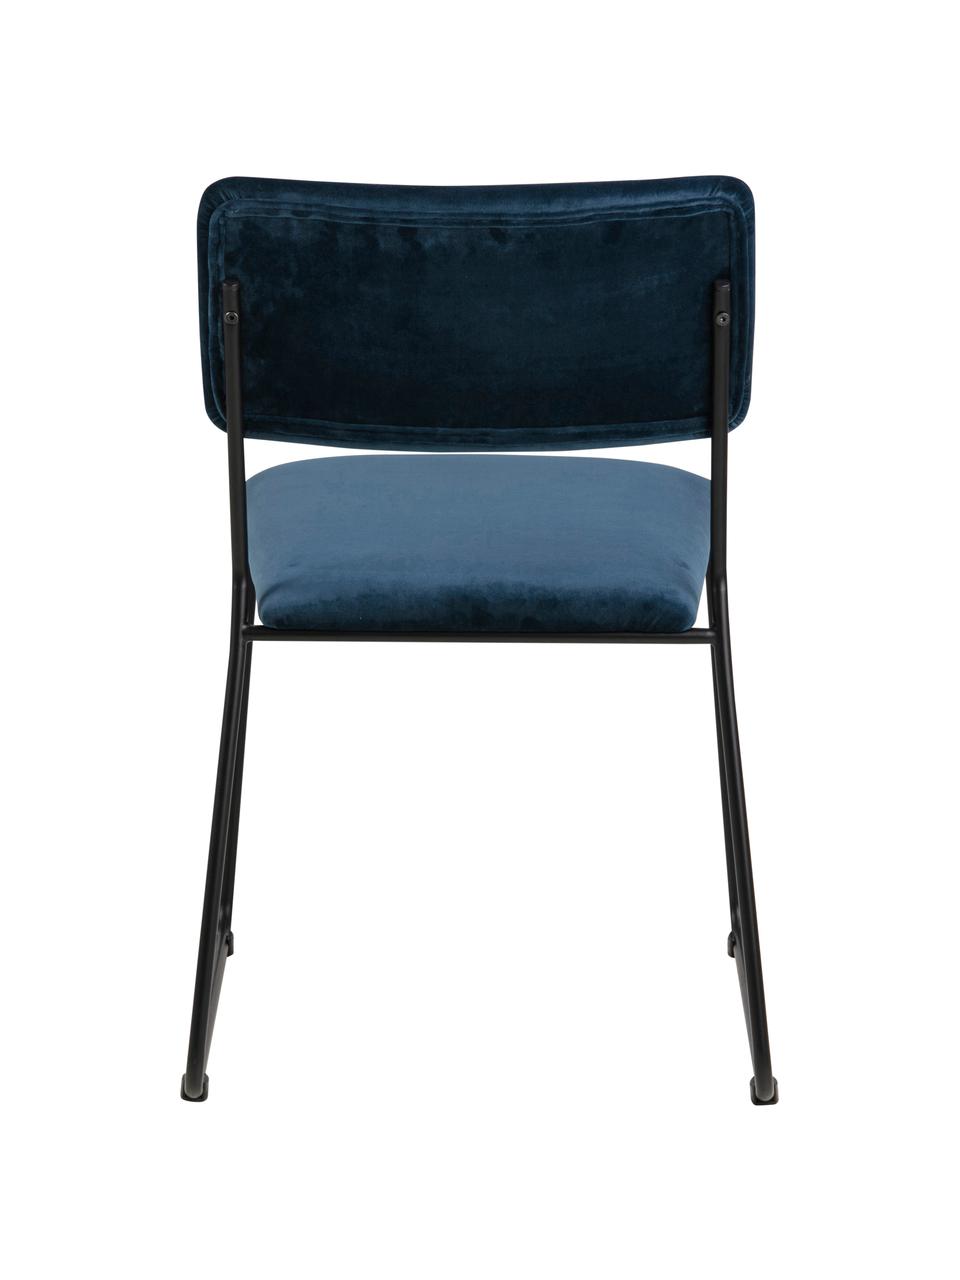 Krzesło tapicerowane z aksamitu Cornelia, 2 szt., Tapicerka: aksamit poliestrowy 25 00, Nogi: metal lakierowany, Ciemny niebieski, czarny, S 50 x G 54 cm